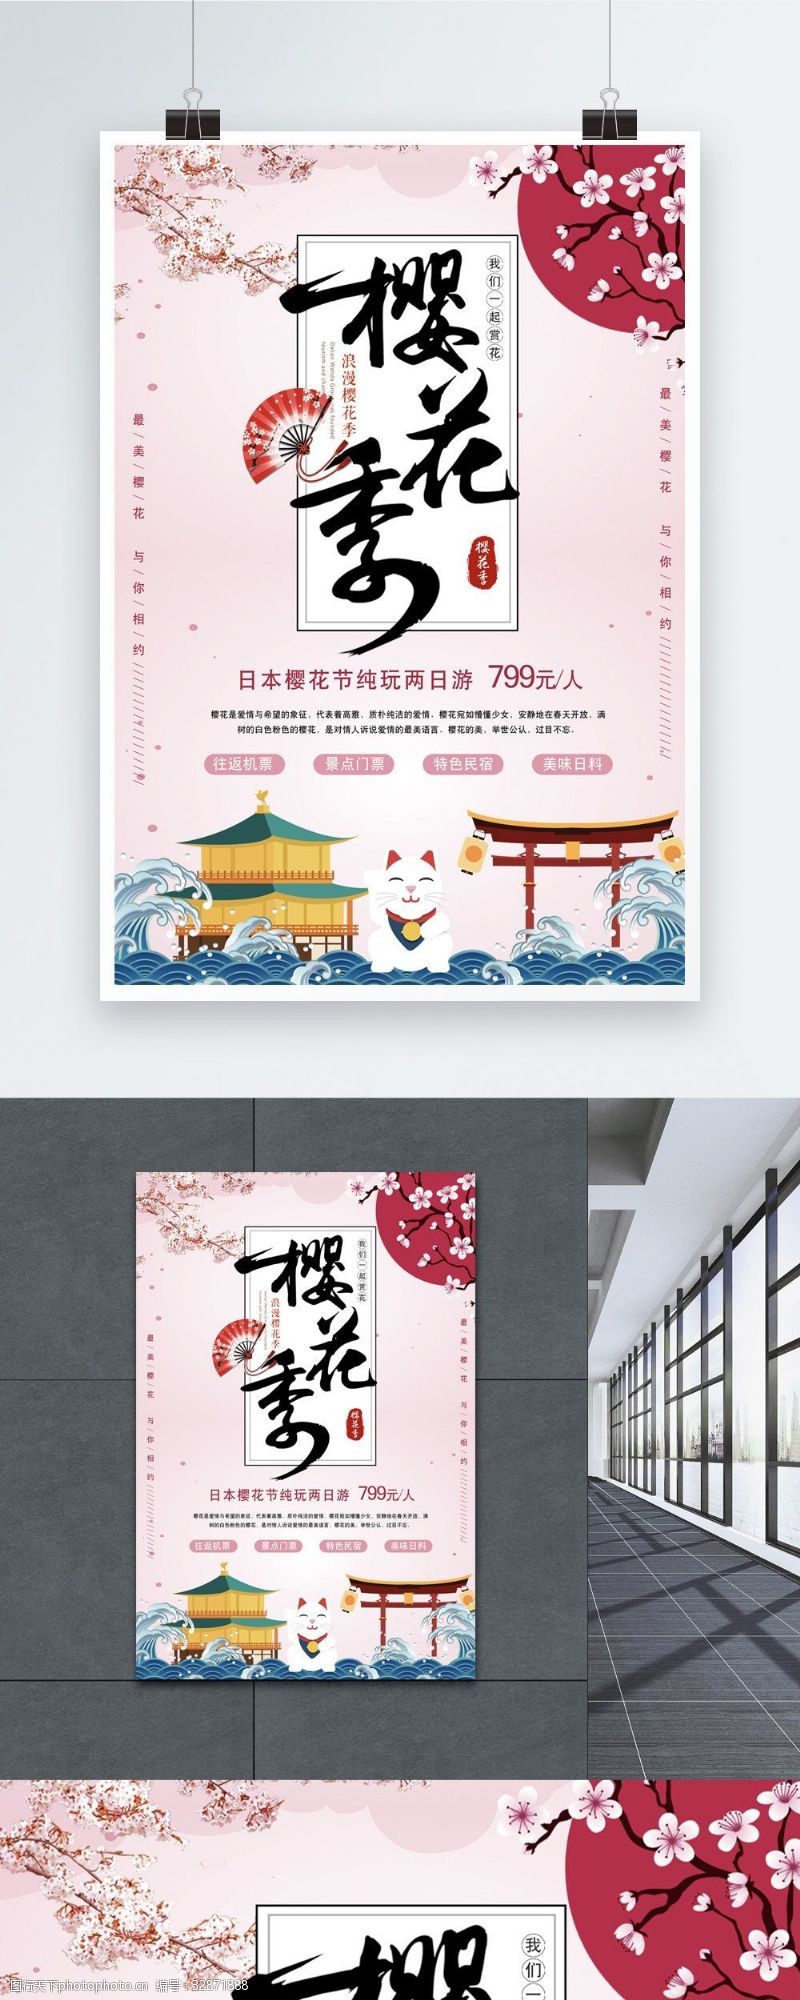 武汉樱花节樱花节海报